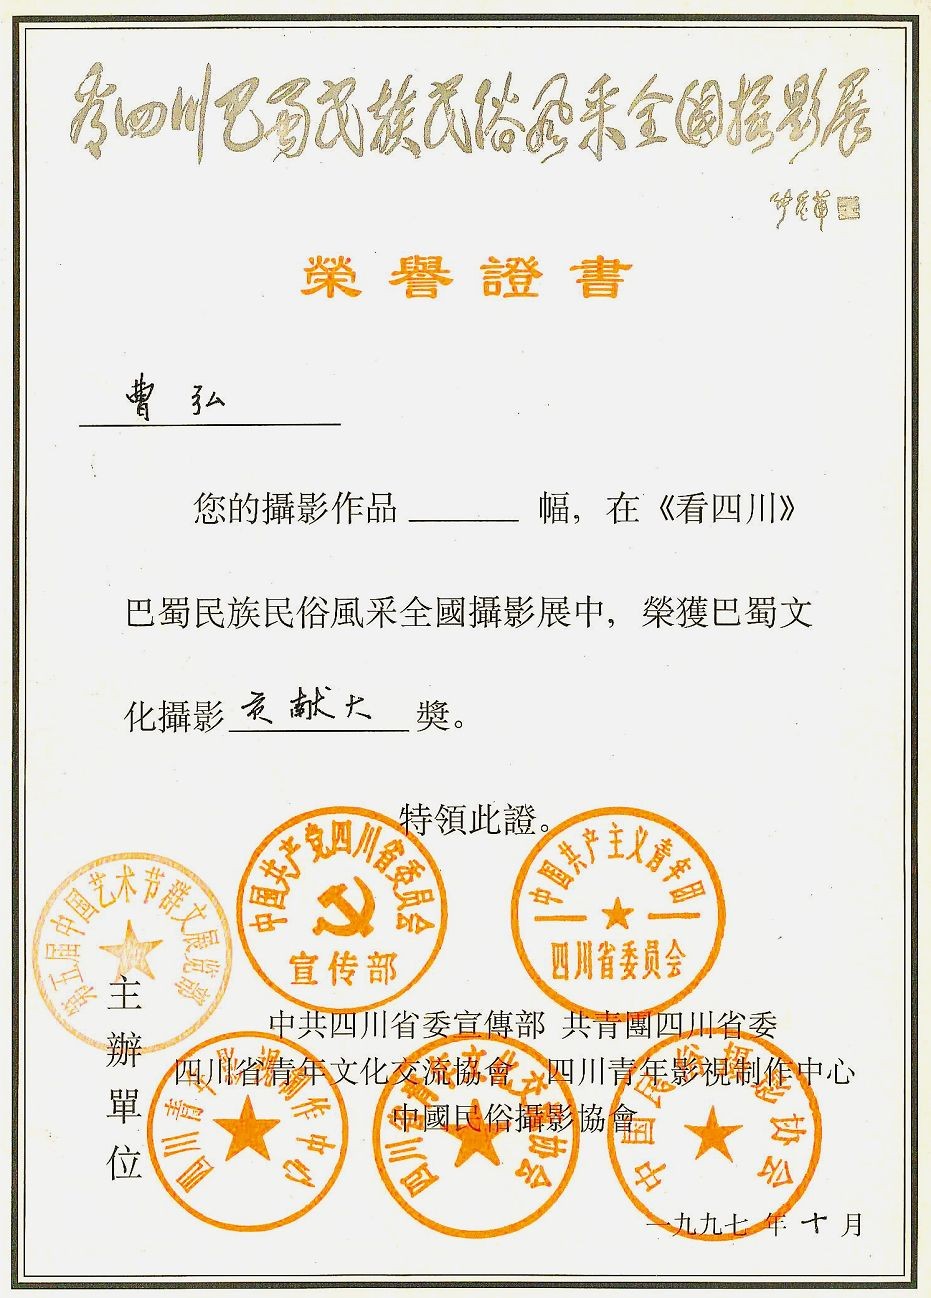 1997年笫五届中国艺术节荣获证书cv.jpg